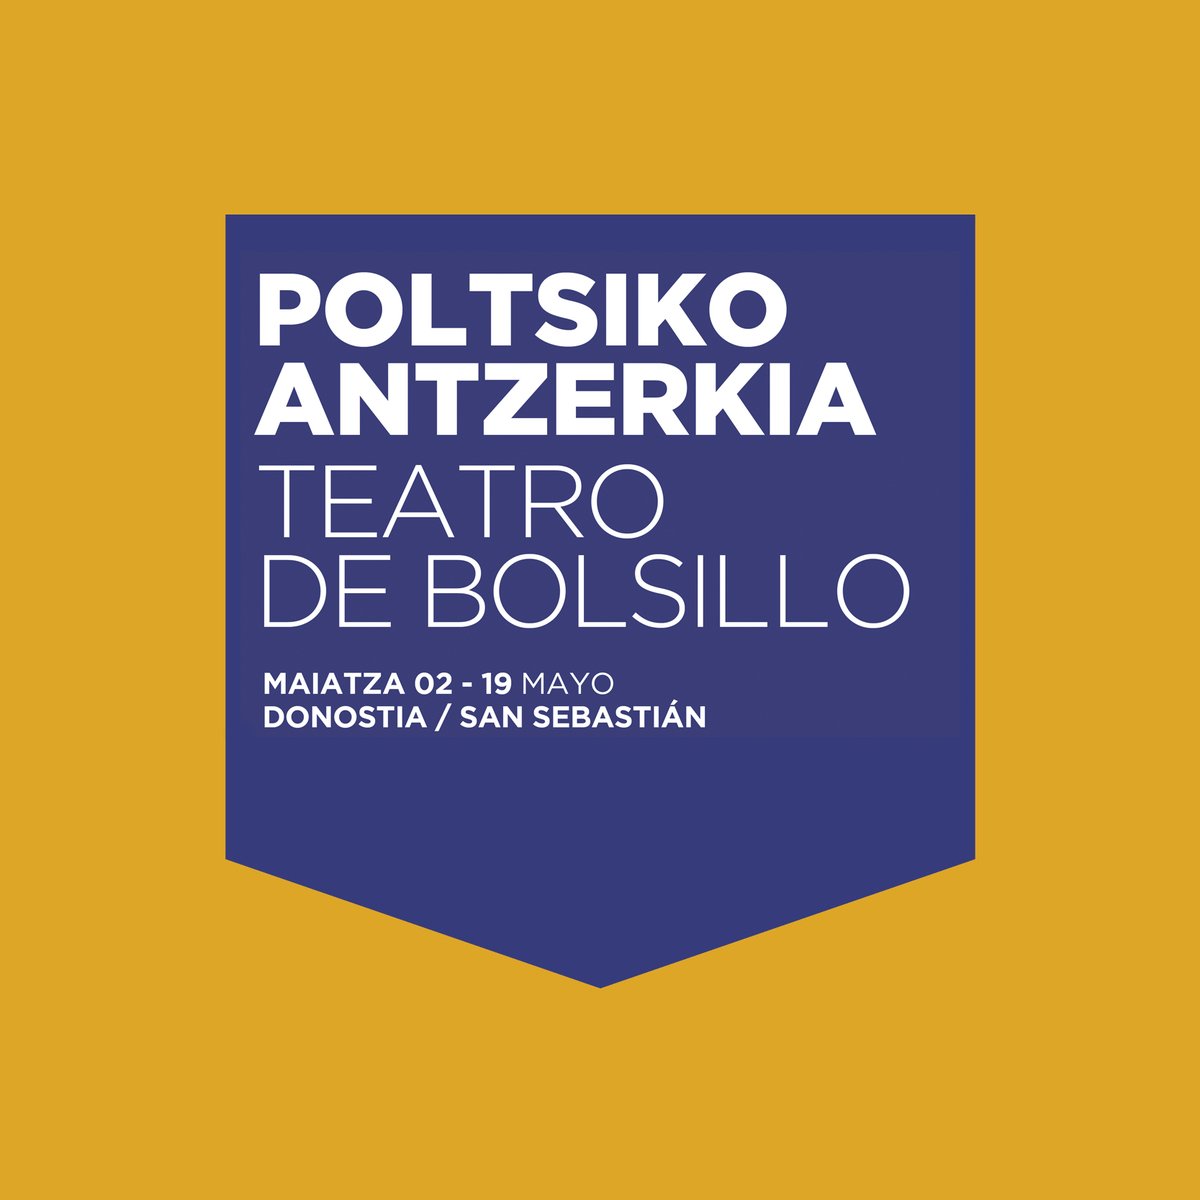 🎭 @Poltsiko jaialdia / Festival de Teatro de Bolsillo 📆 Asteburuko agenda: 4 saio gaur -> labur.eus/HY0pZ 📆 Agenda del fin de semana: 4 funciones hoy -> labur.eus/39R8C 📌 #Poltsiko #Donostia